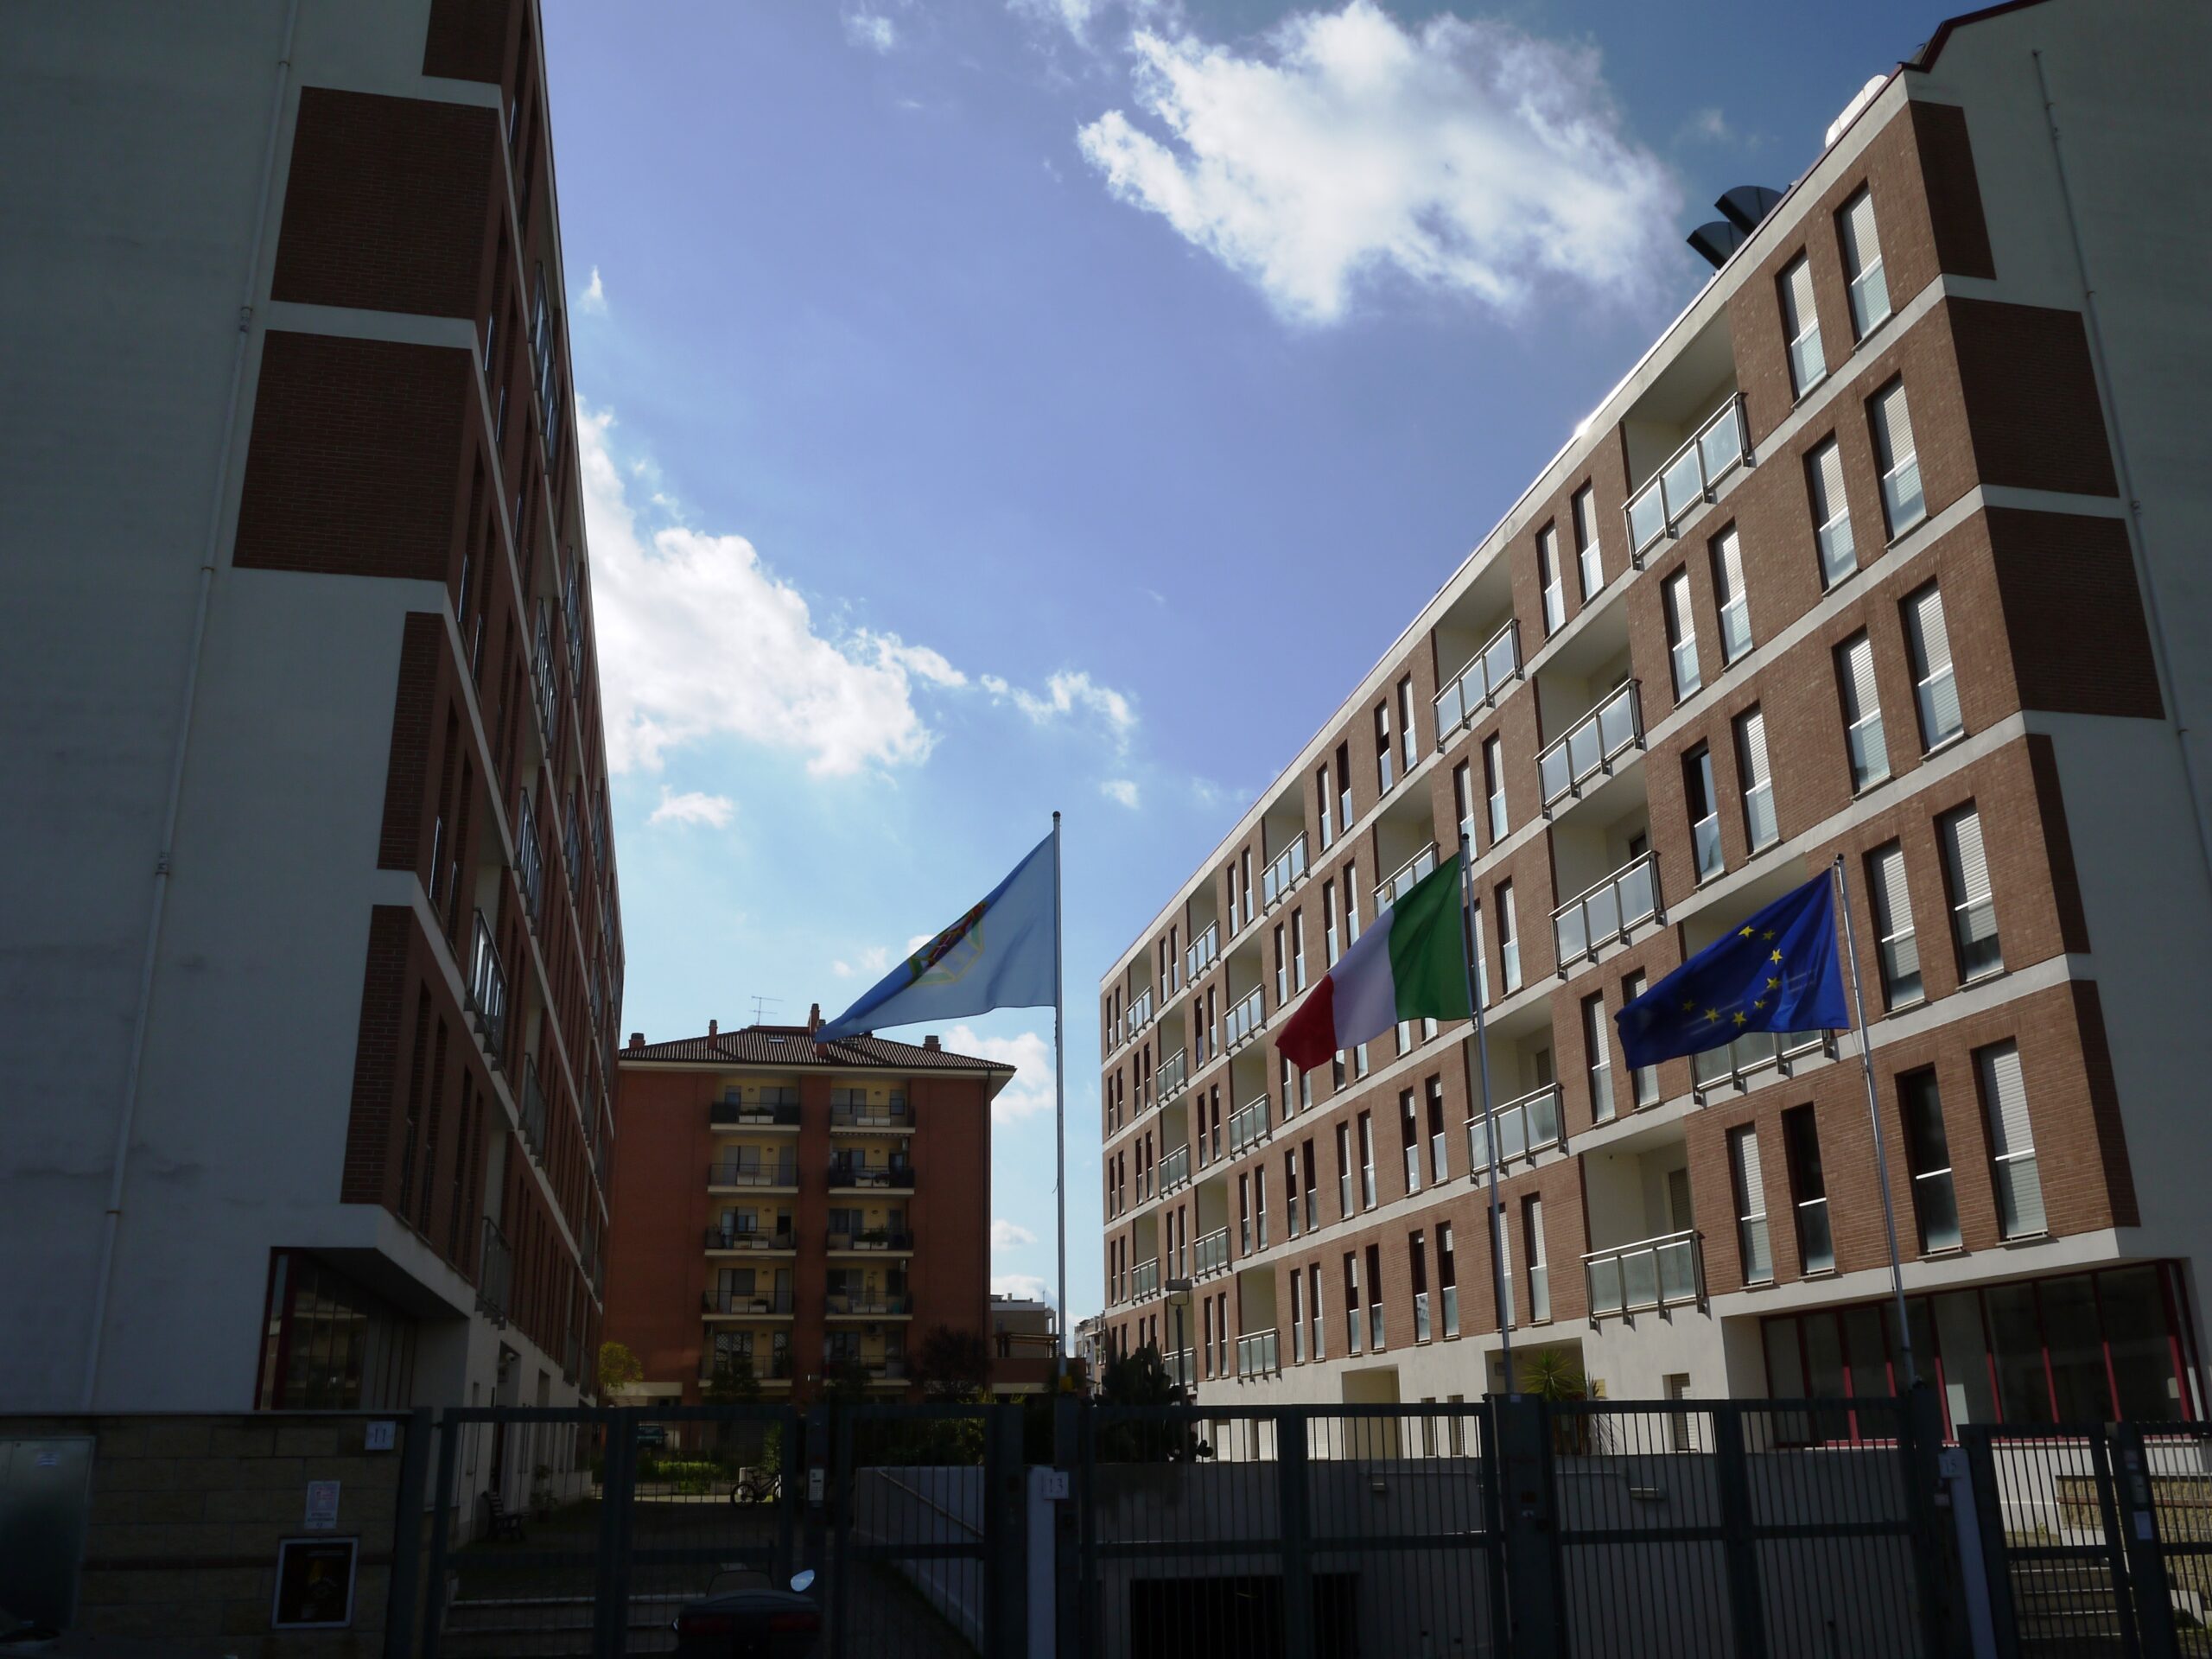 Residenza universitaria Falcone e Borsellino